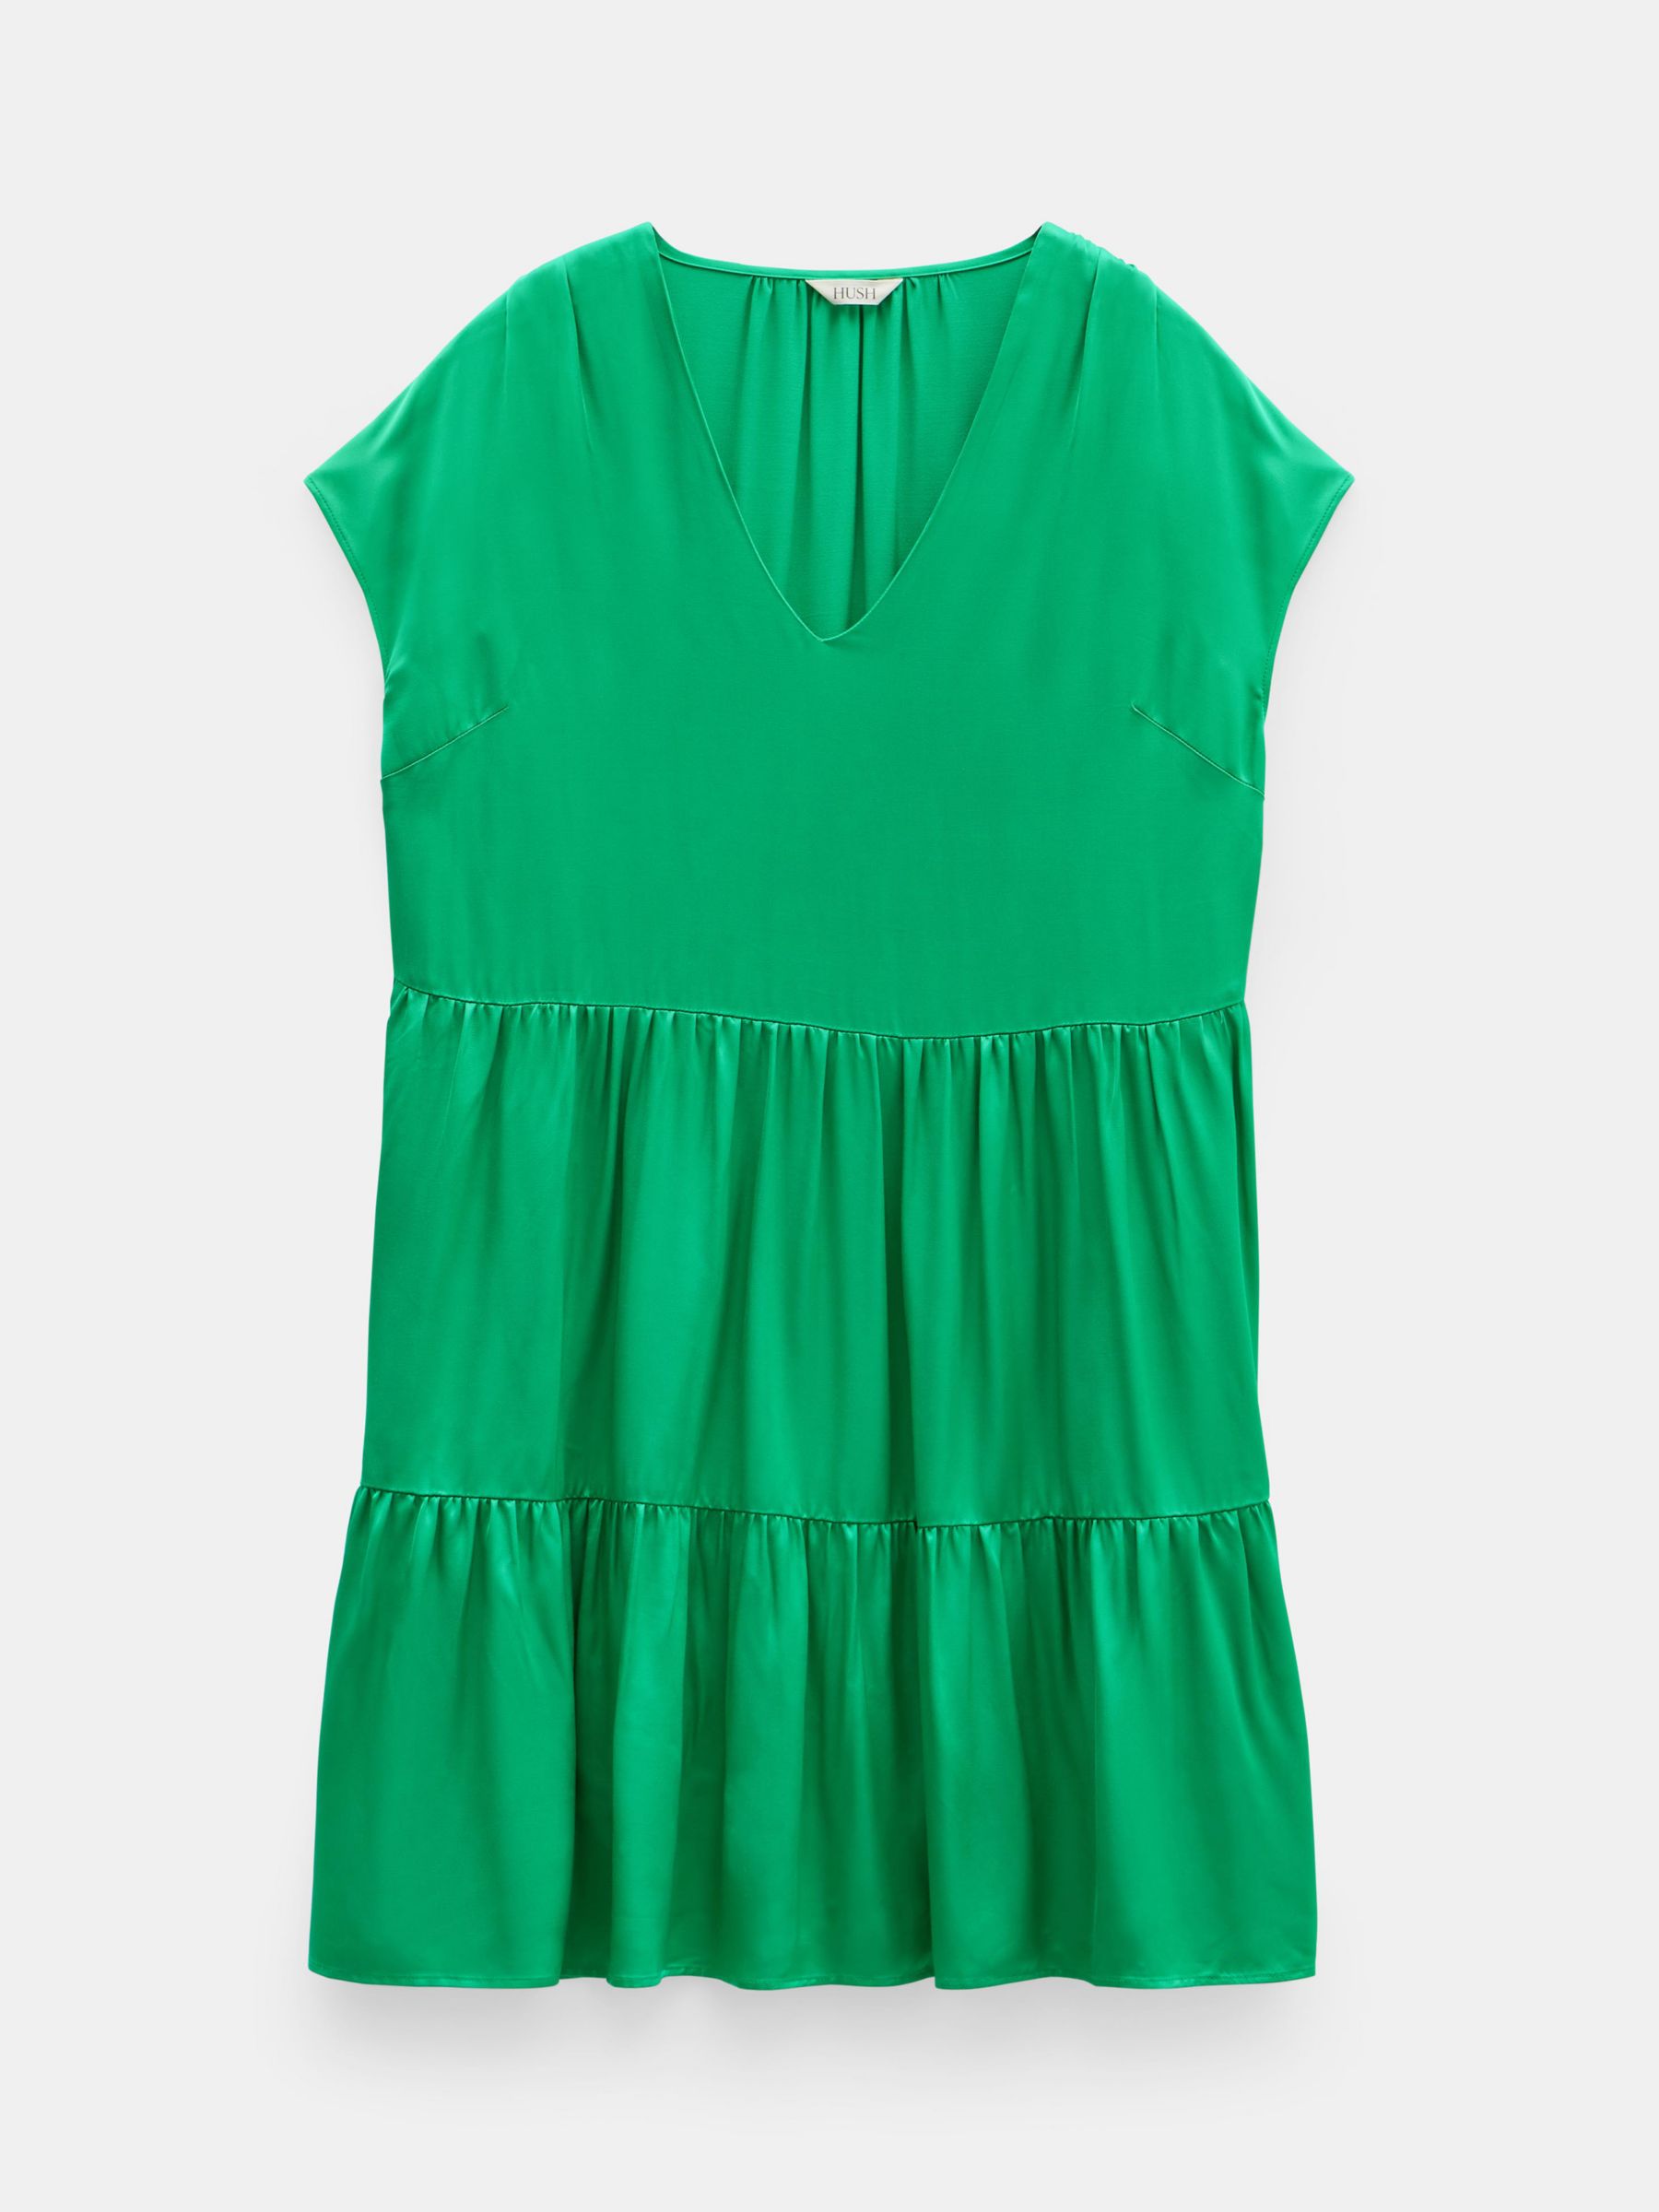 HUSH Lily Satin Tiered Mini Dress, Green, 10